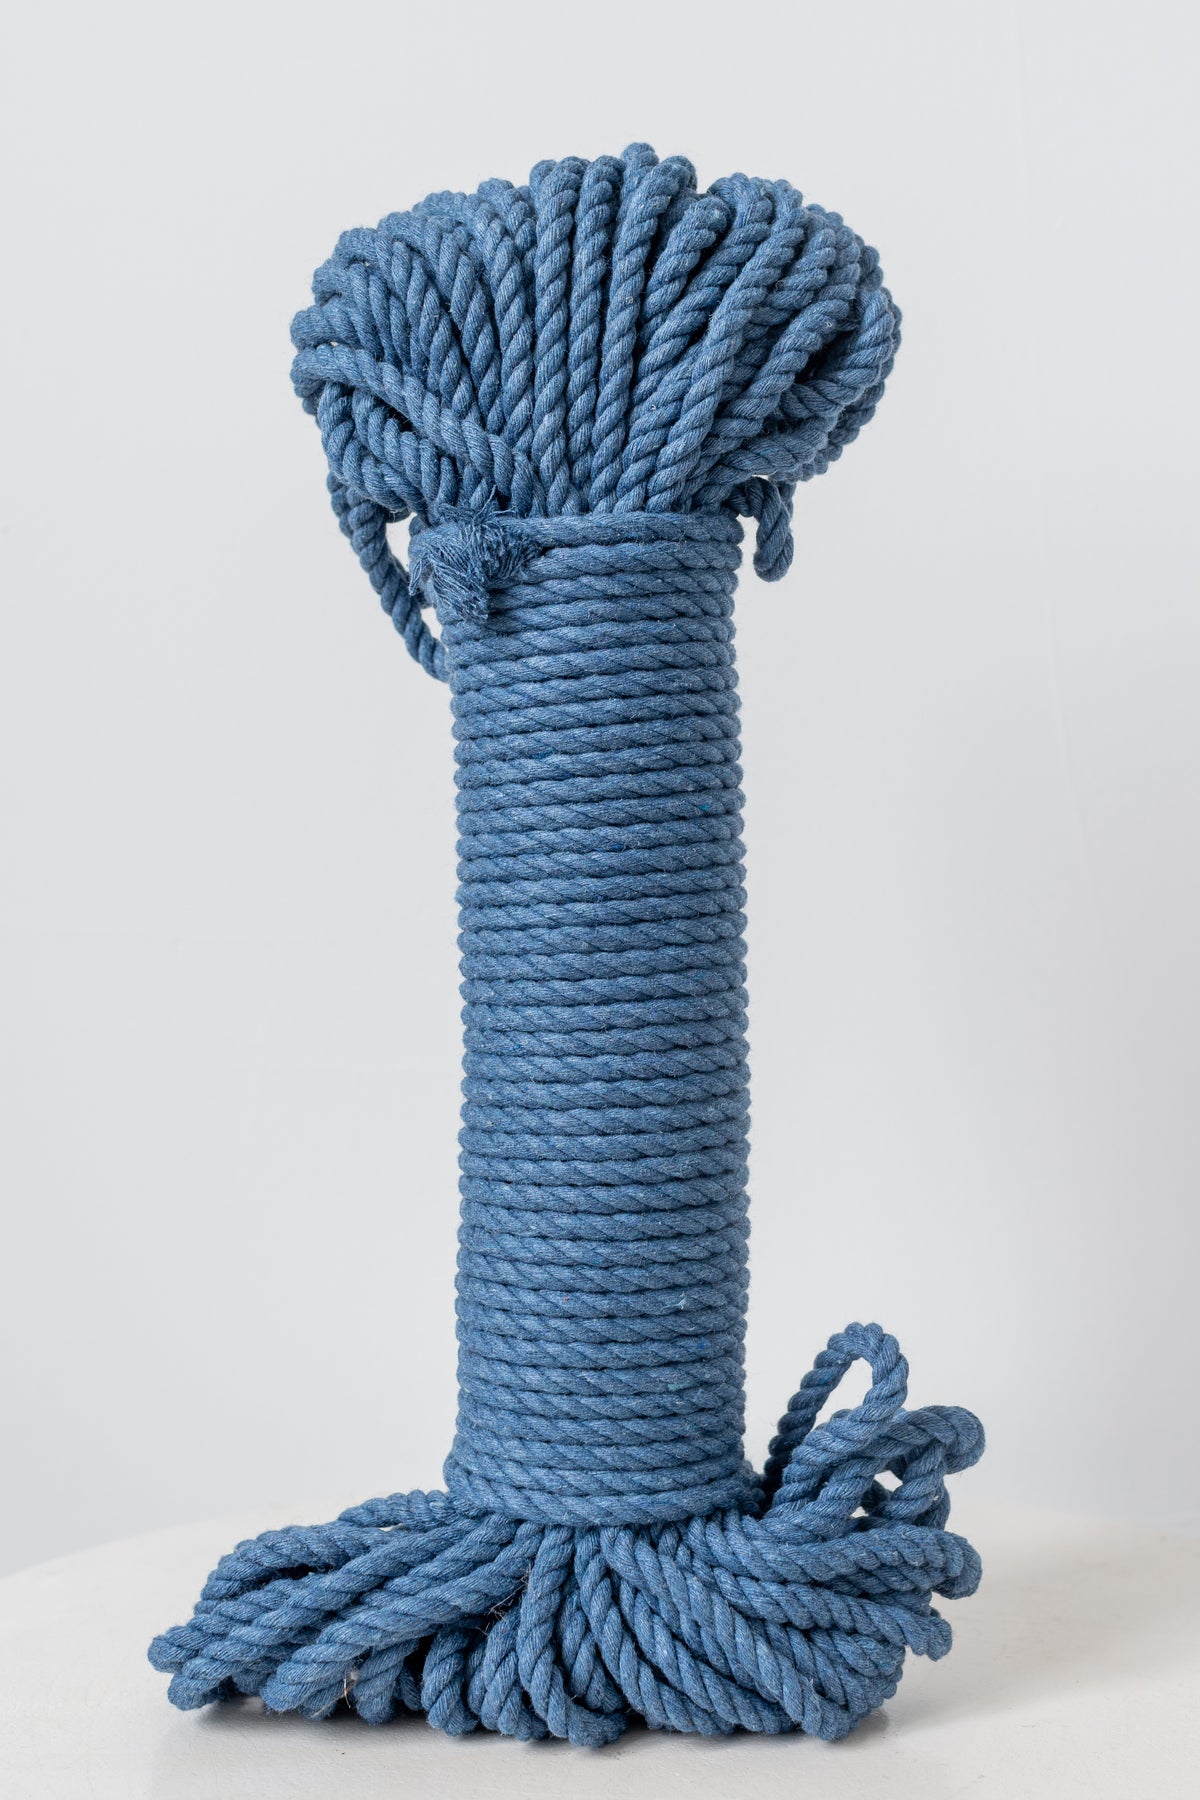 Macrame Rope - 5MM Bundles (30 meter)